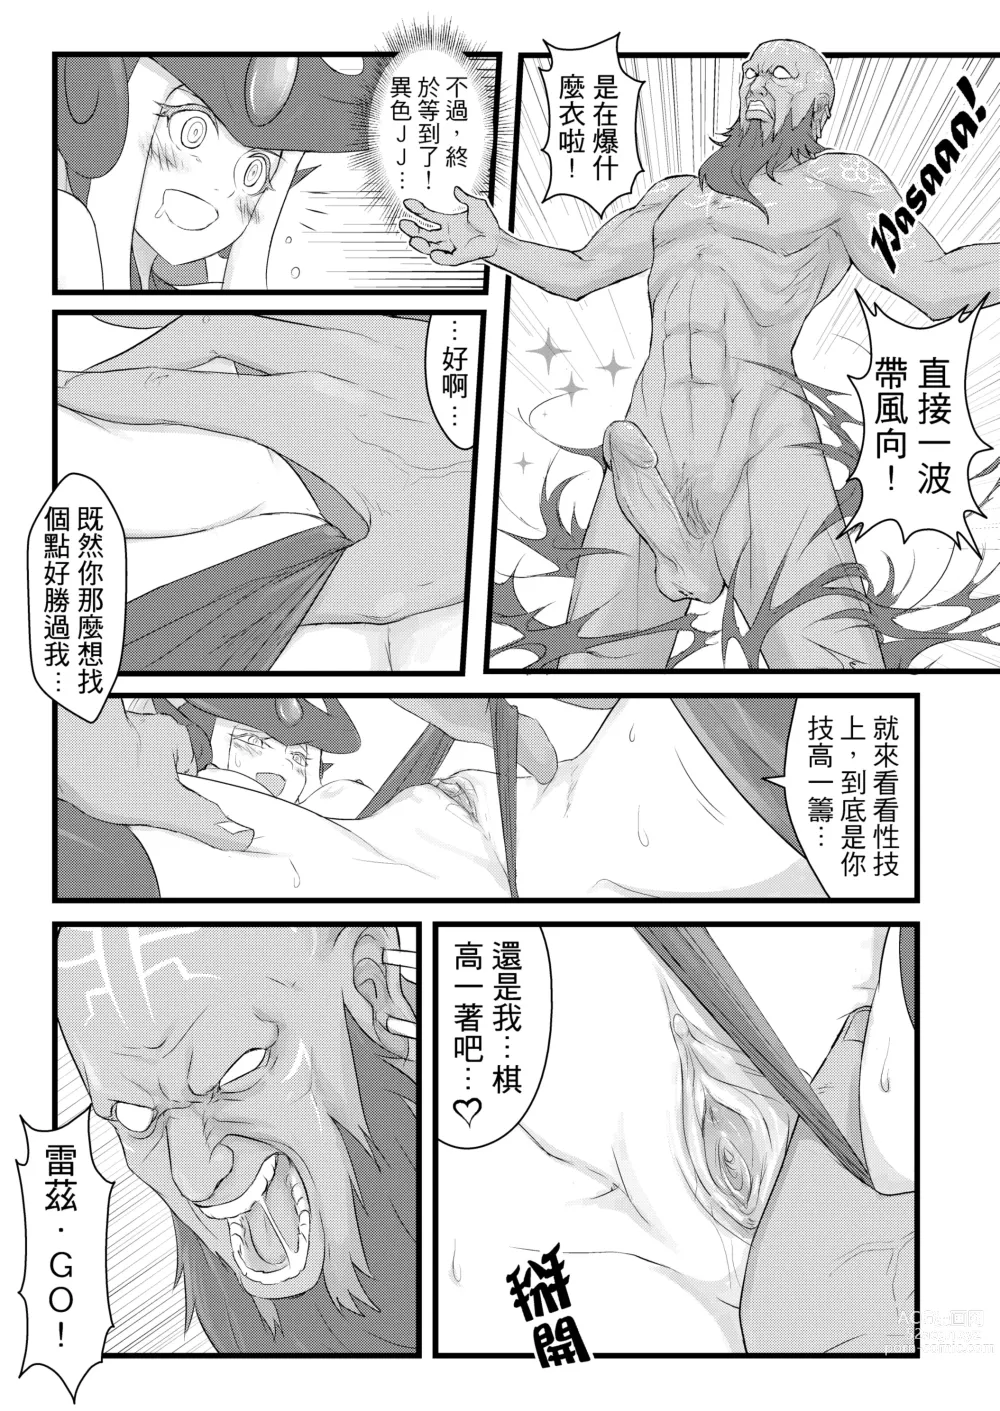 Page 12 of doujinshi ININ Renmei (uncensored)